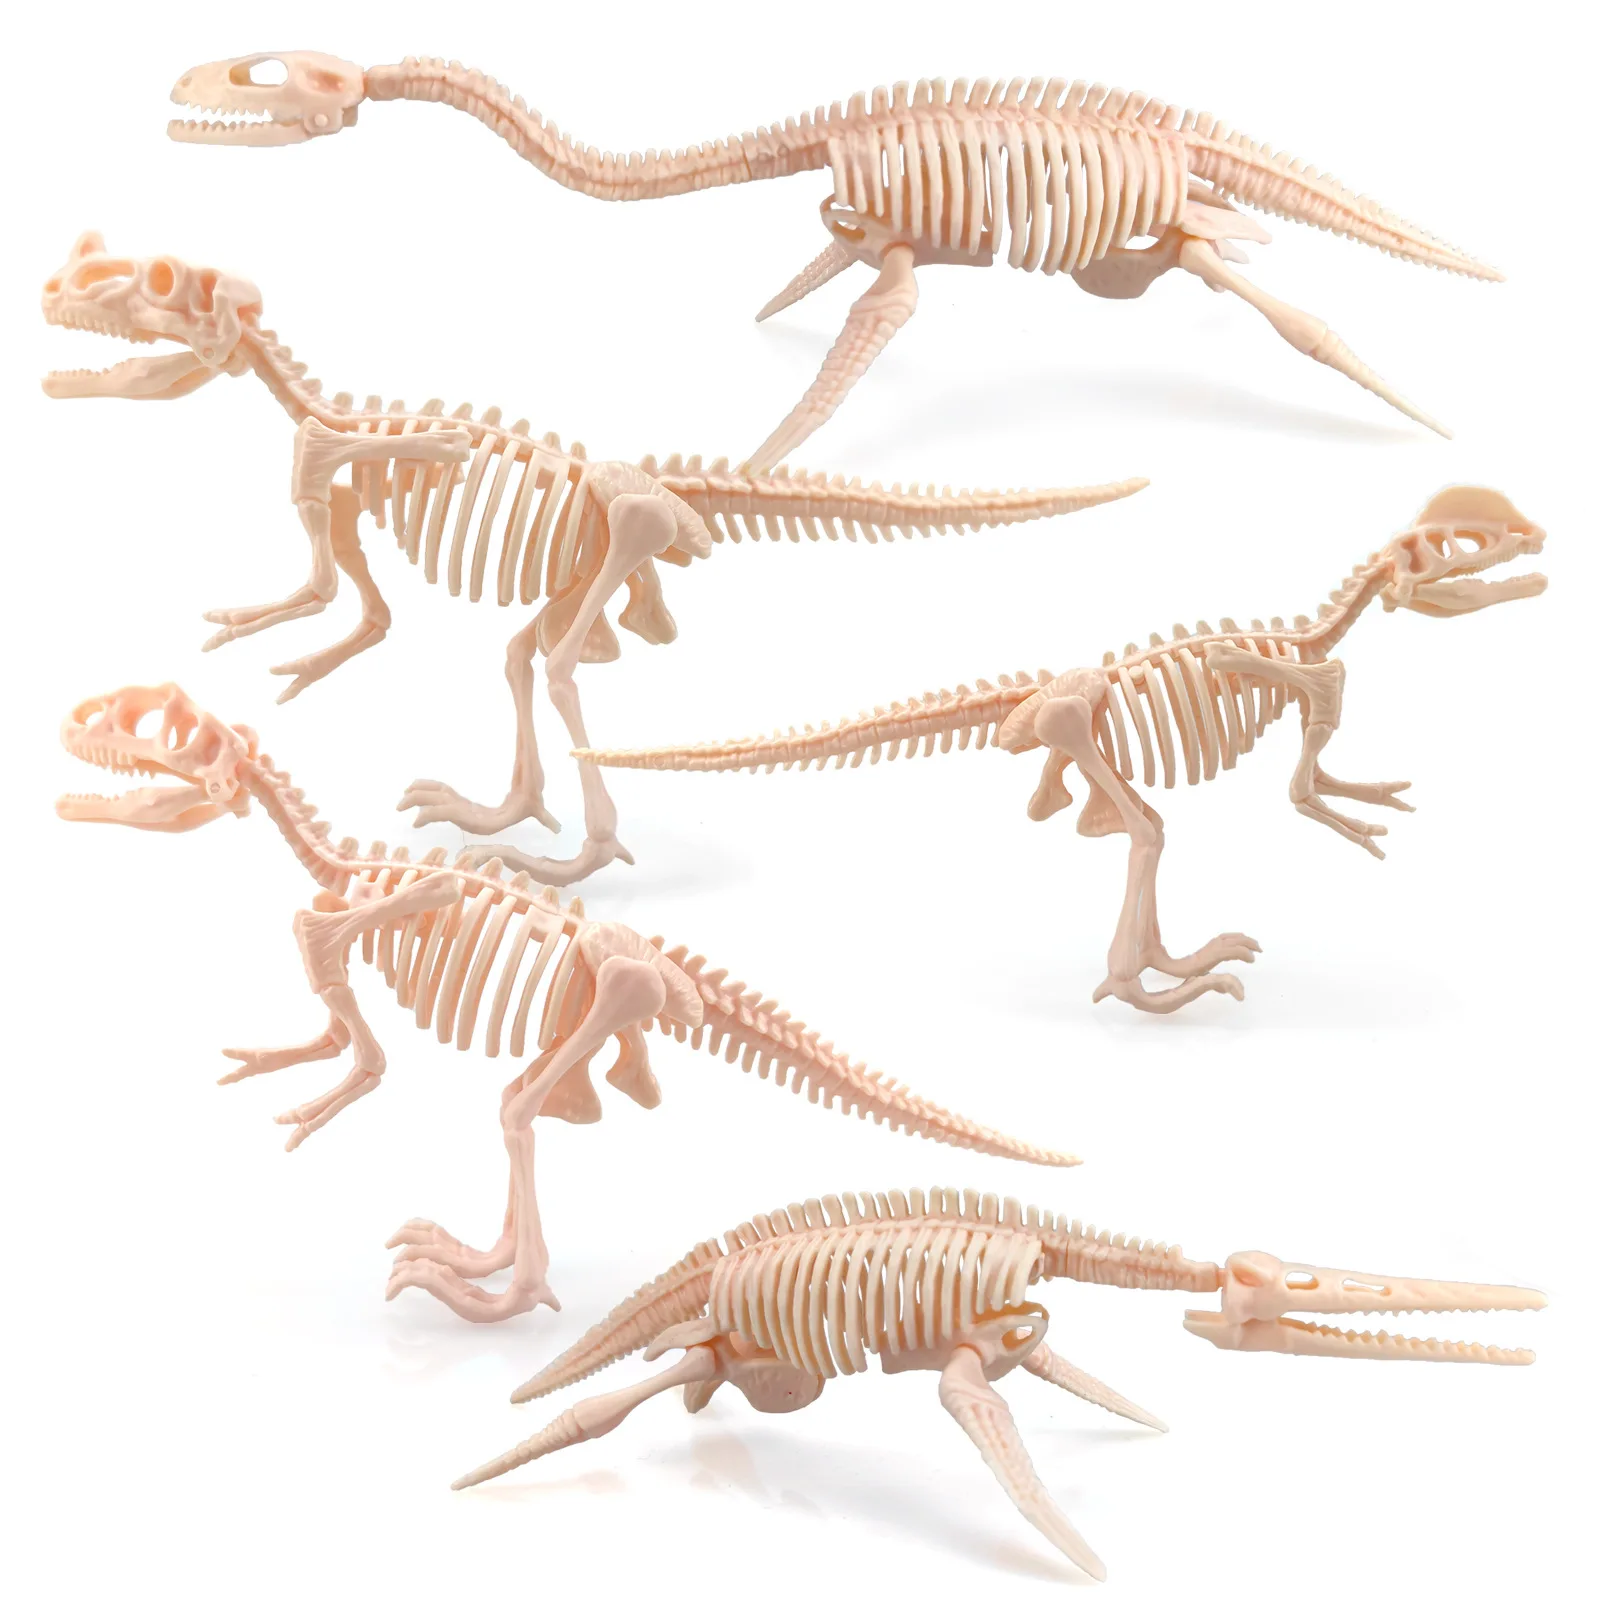 

DIY Dinosaur Skeleton Assembly Model Toy Medium Tyrannosaurus Rex / Triceratops Building Blocks 3D Assembly Educational Toys